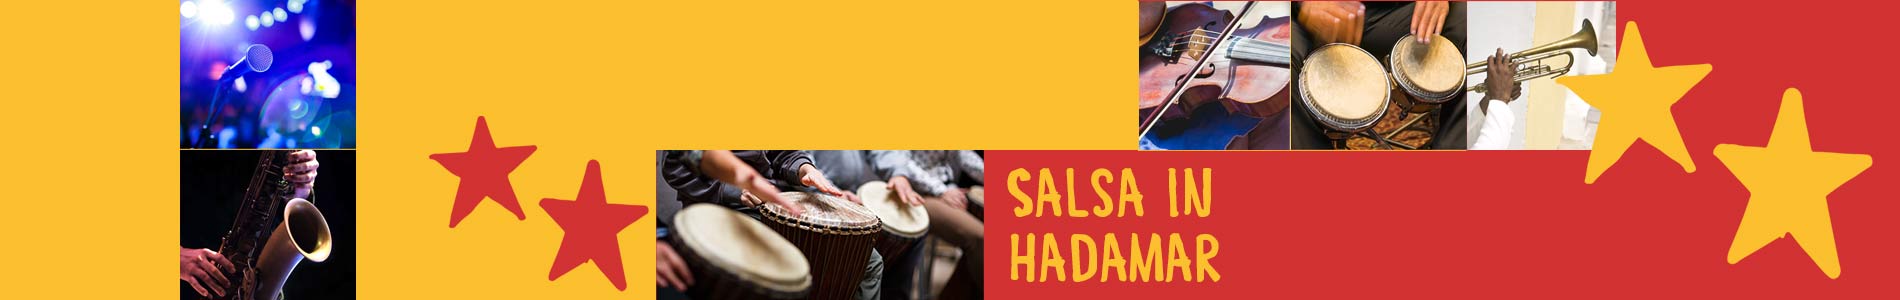 Salsa in Hadamar – Salsa lernen und tanzen, Tanzkurse, Partys, Veranstaltungen